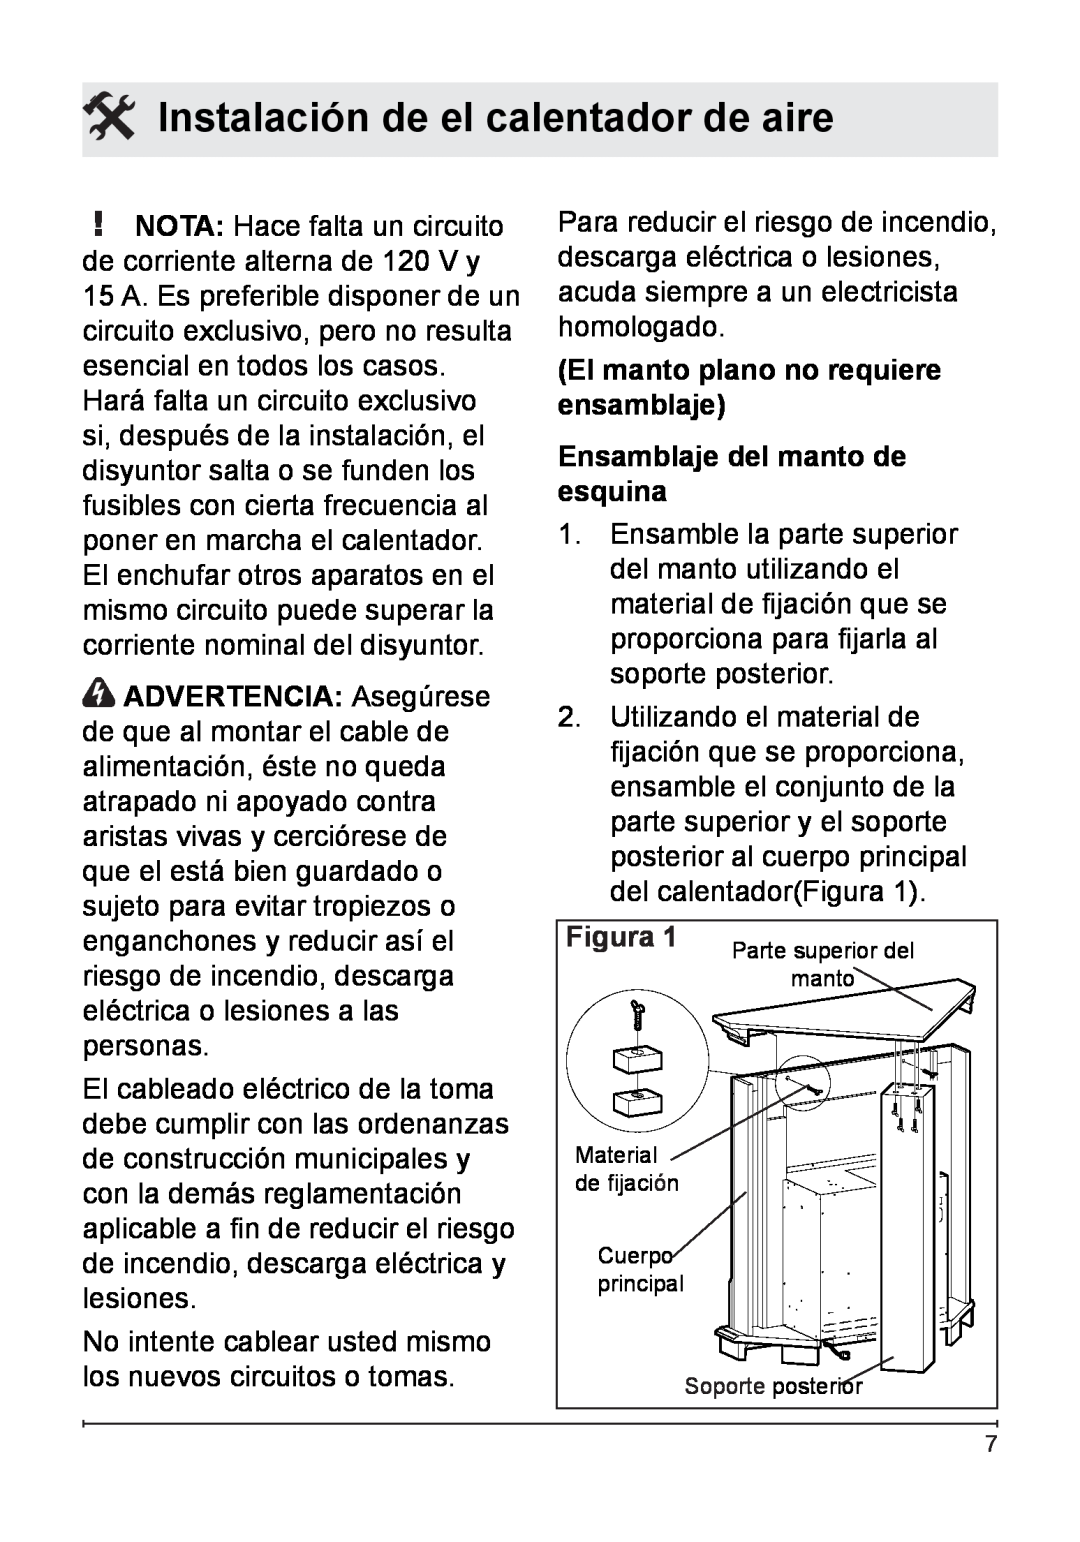 Dimplex 7207250100R05 Instalación de el calentador de aire, El manto plano no requiere, ensamblaje, esquina, Figura 